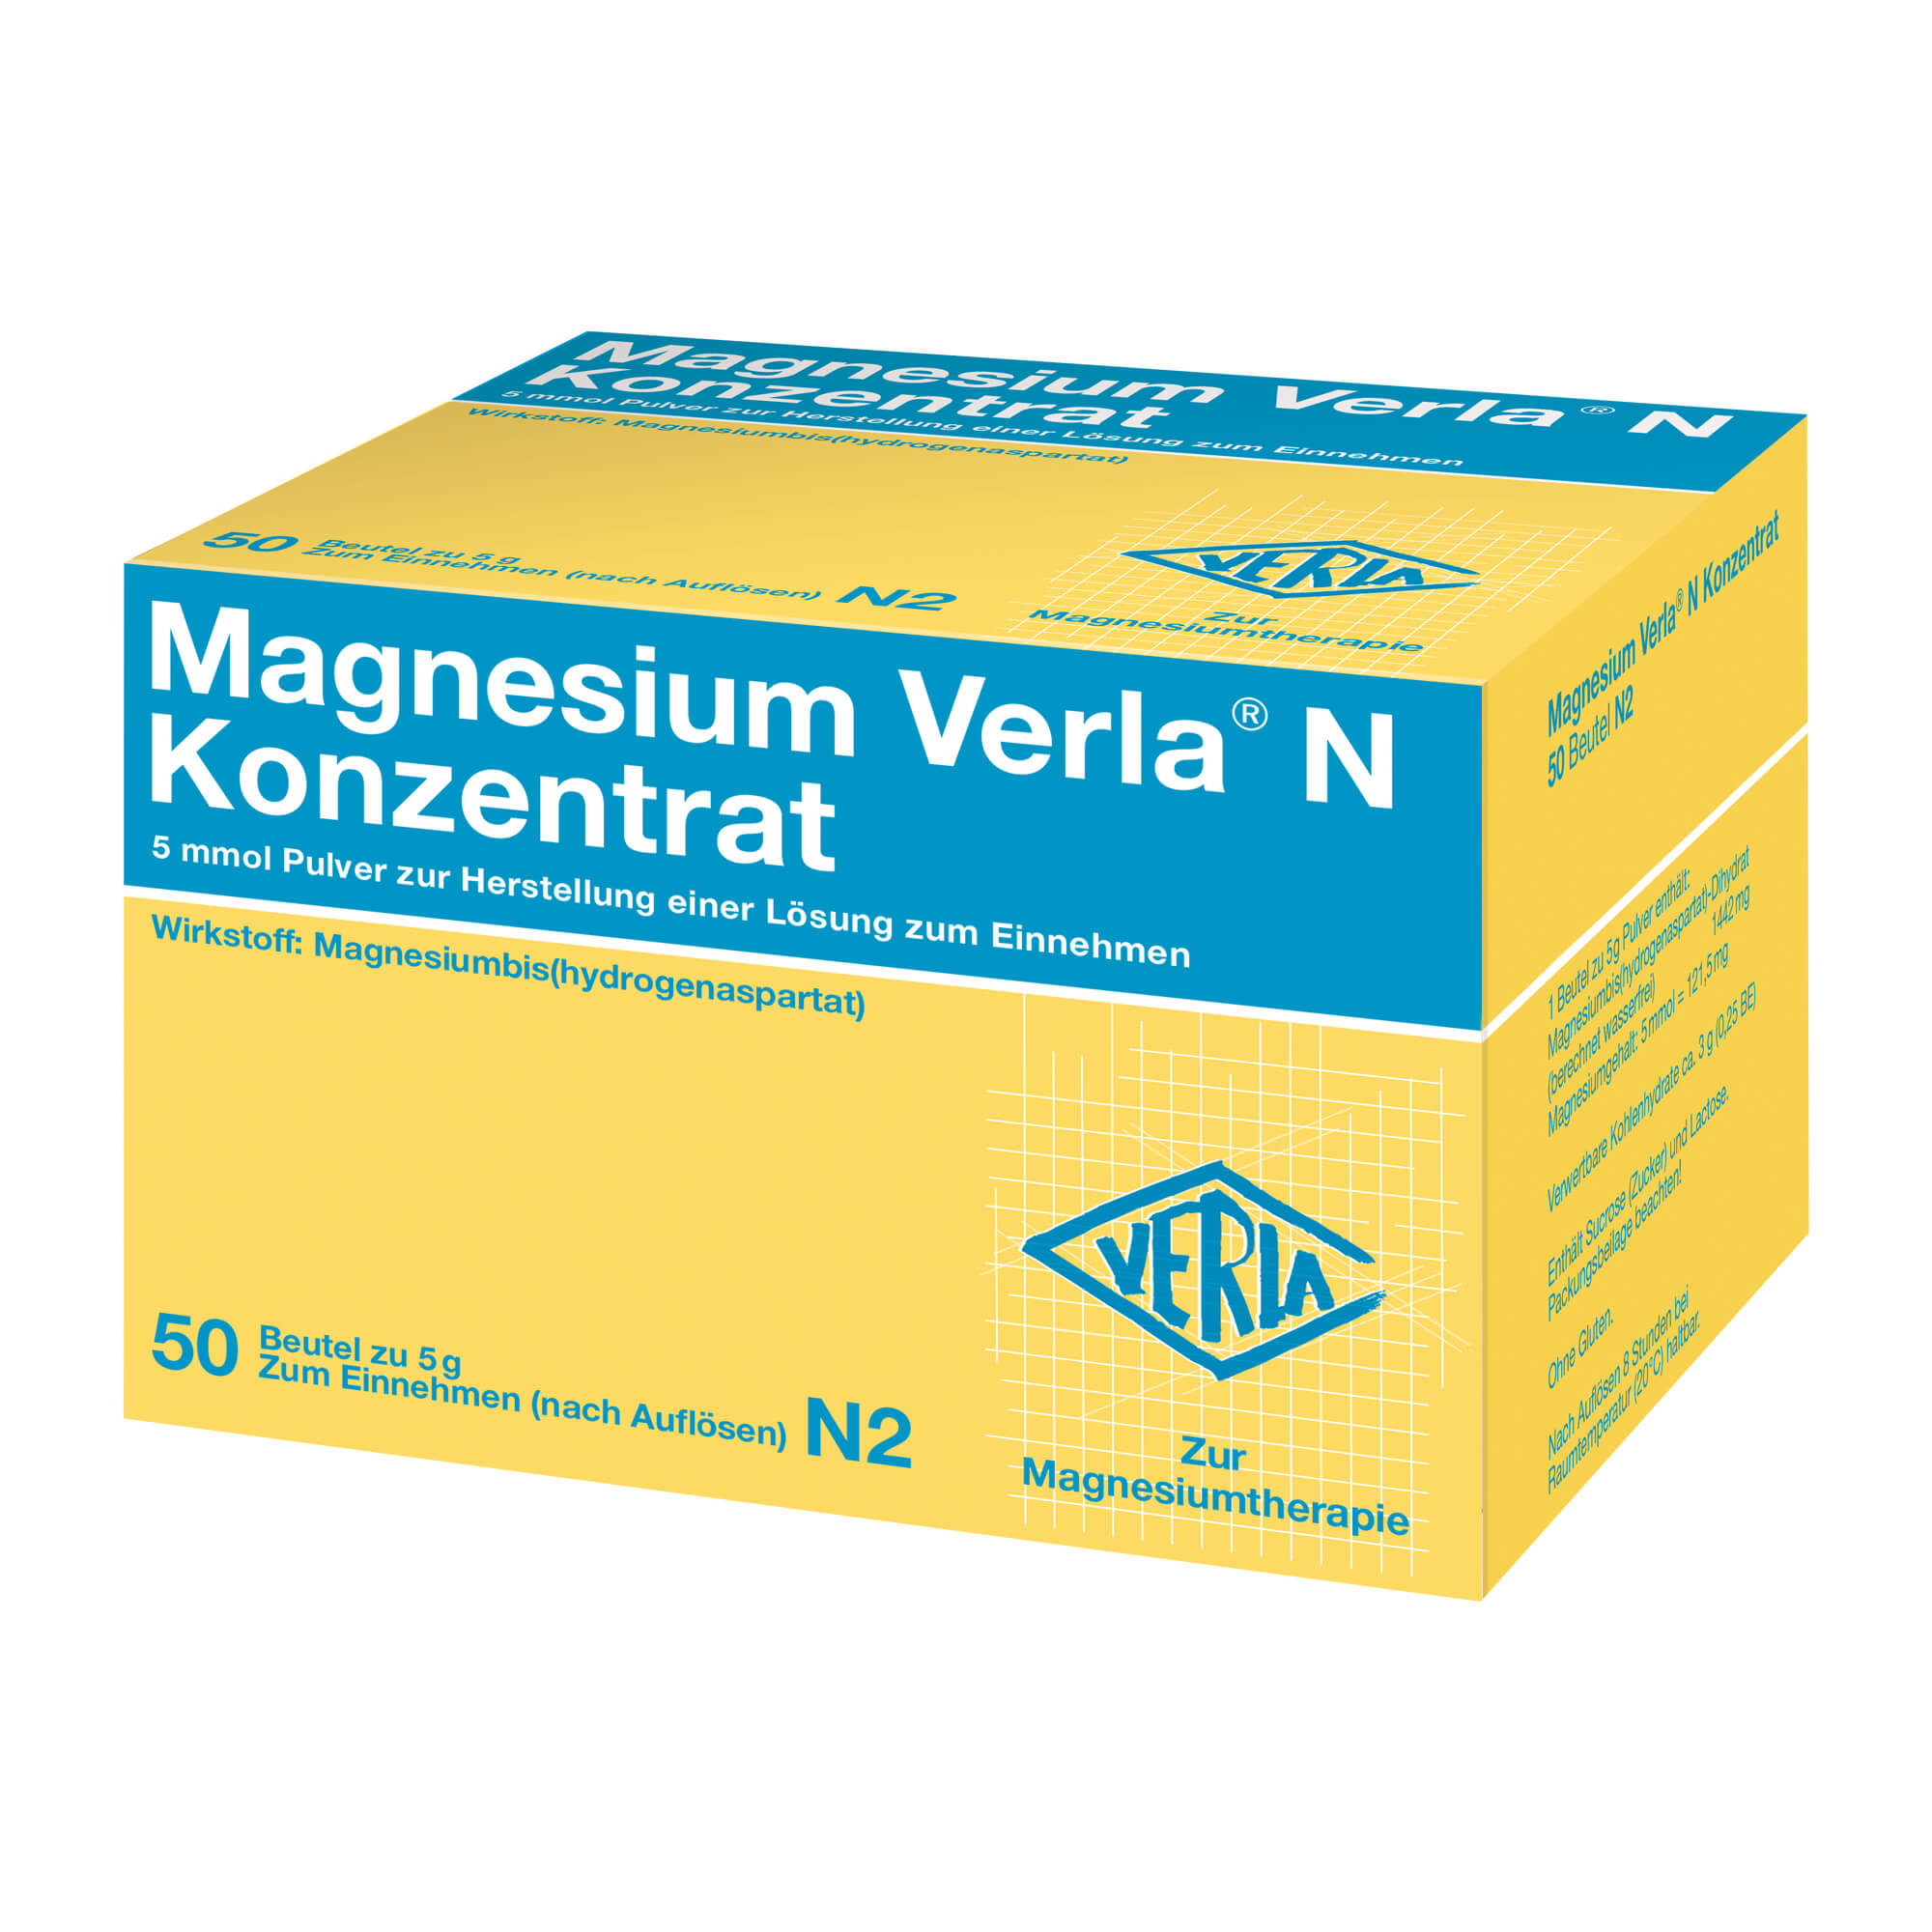 Mineralstoffpräparat zur Behandlung von therapiebedürftigen Magnesiummangelzuständen, die keiner Injektion/Infusion bedürfen.